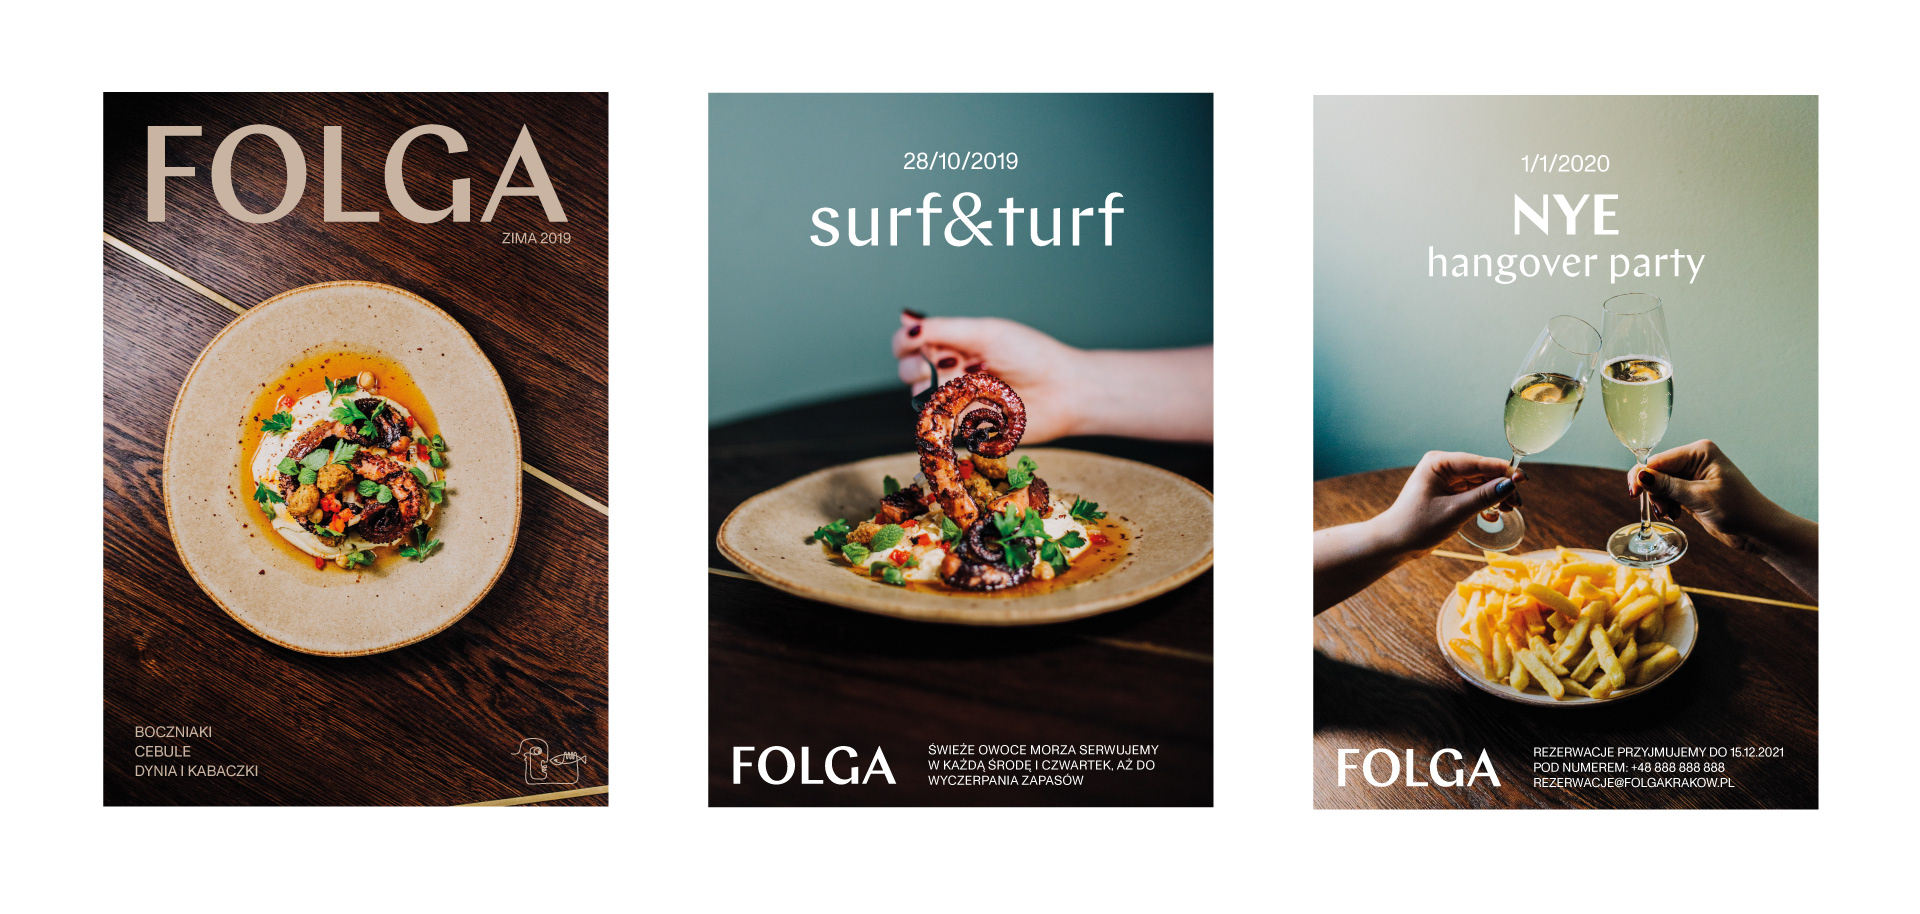 Folga餐厅张贴海报设计